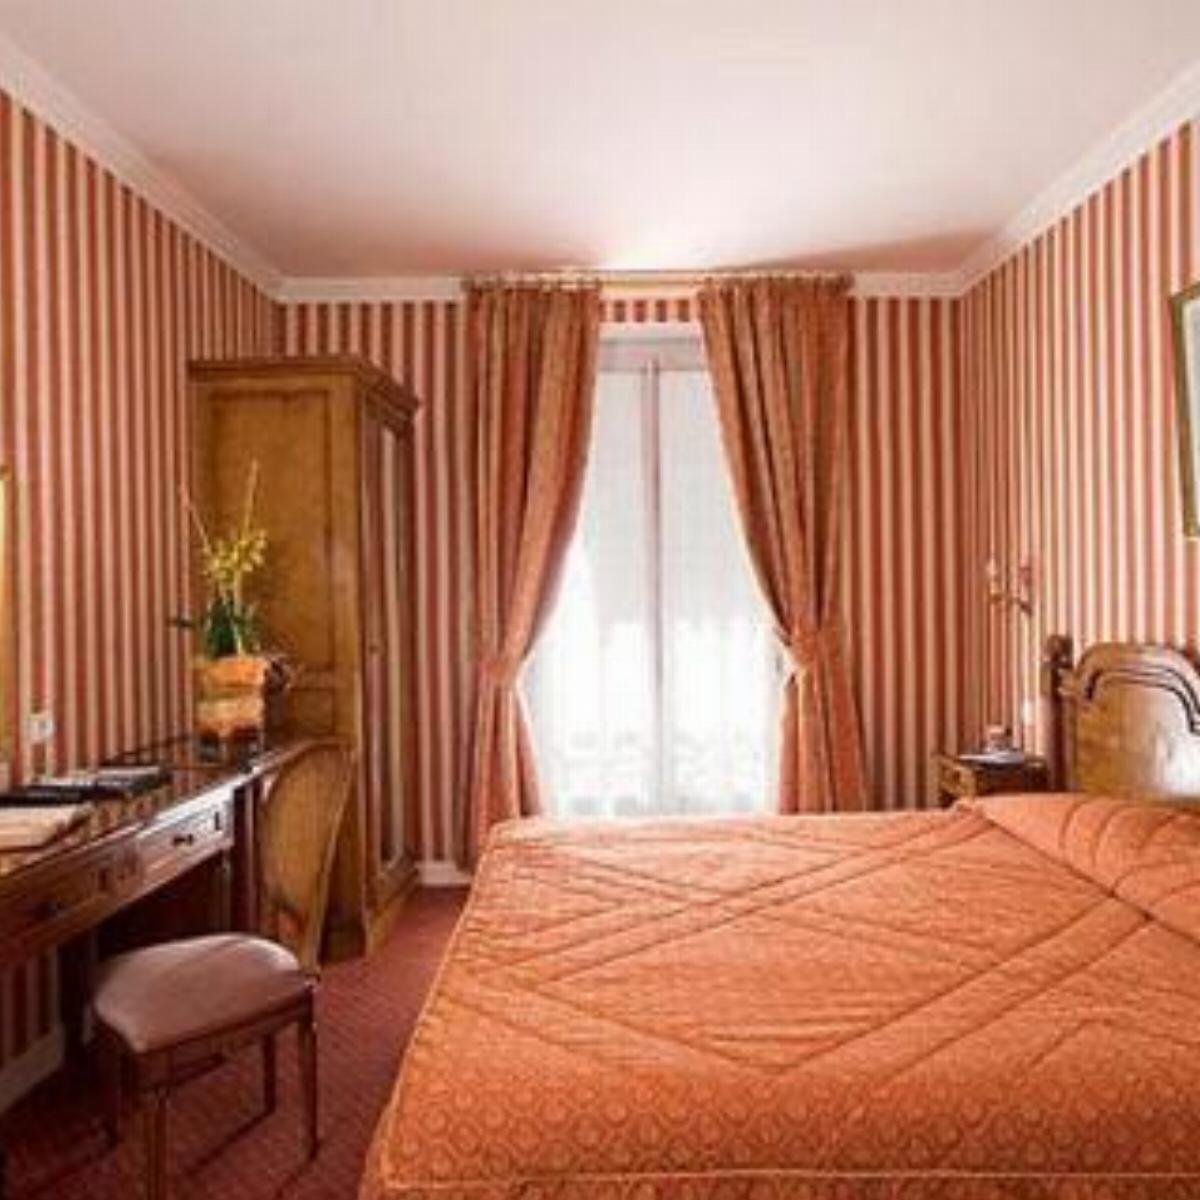 Best Western Premier Ducs de Bourgogne Hotel Paris France